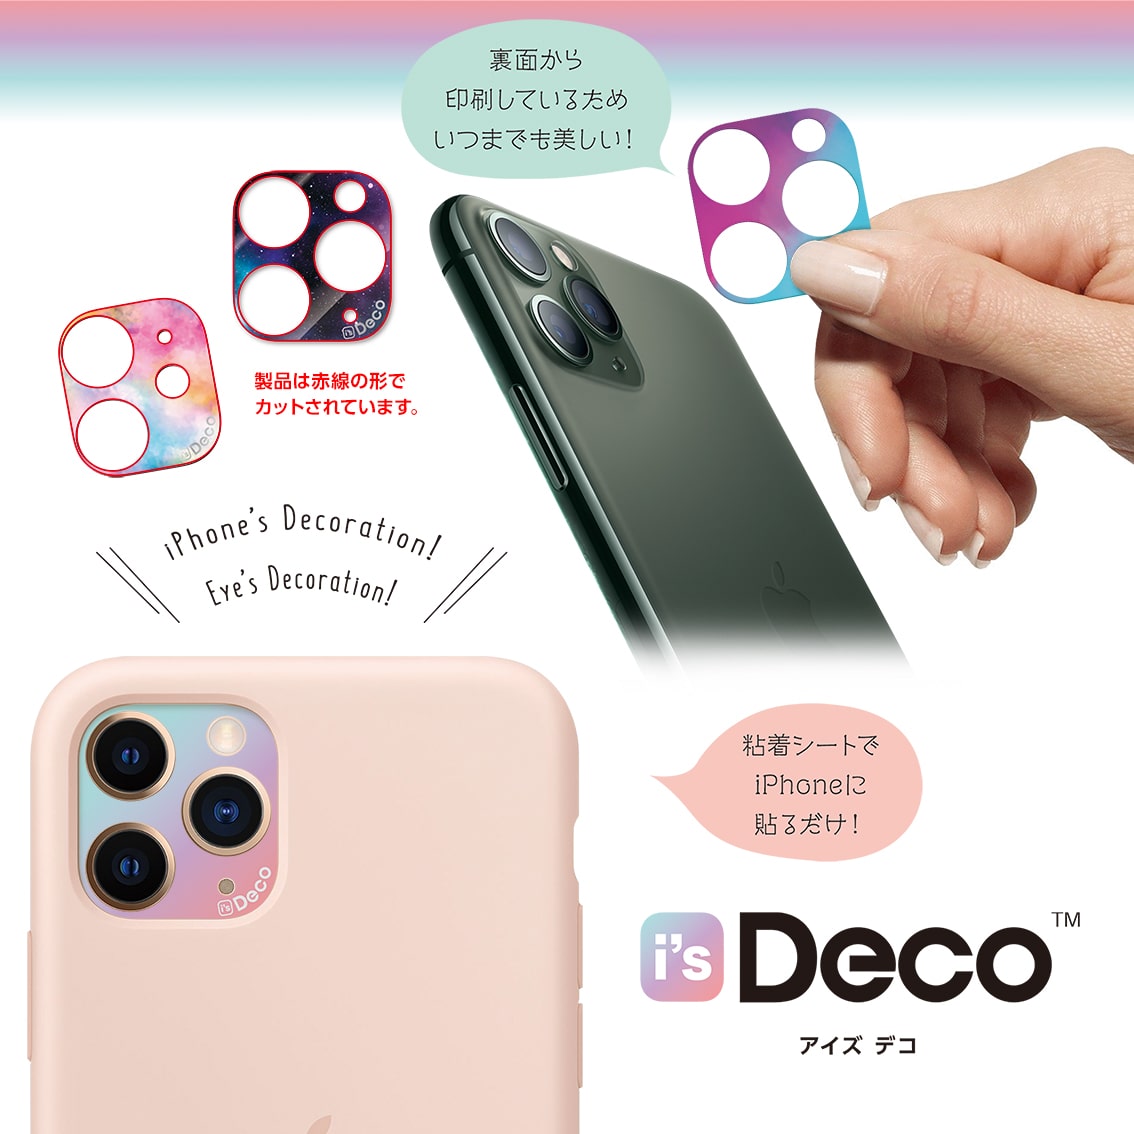 iPhone 11 Pro/11 Pro Max i's Deco  [STANDARD COLOR (B01-B04)］